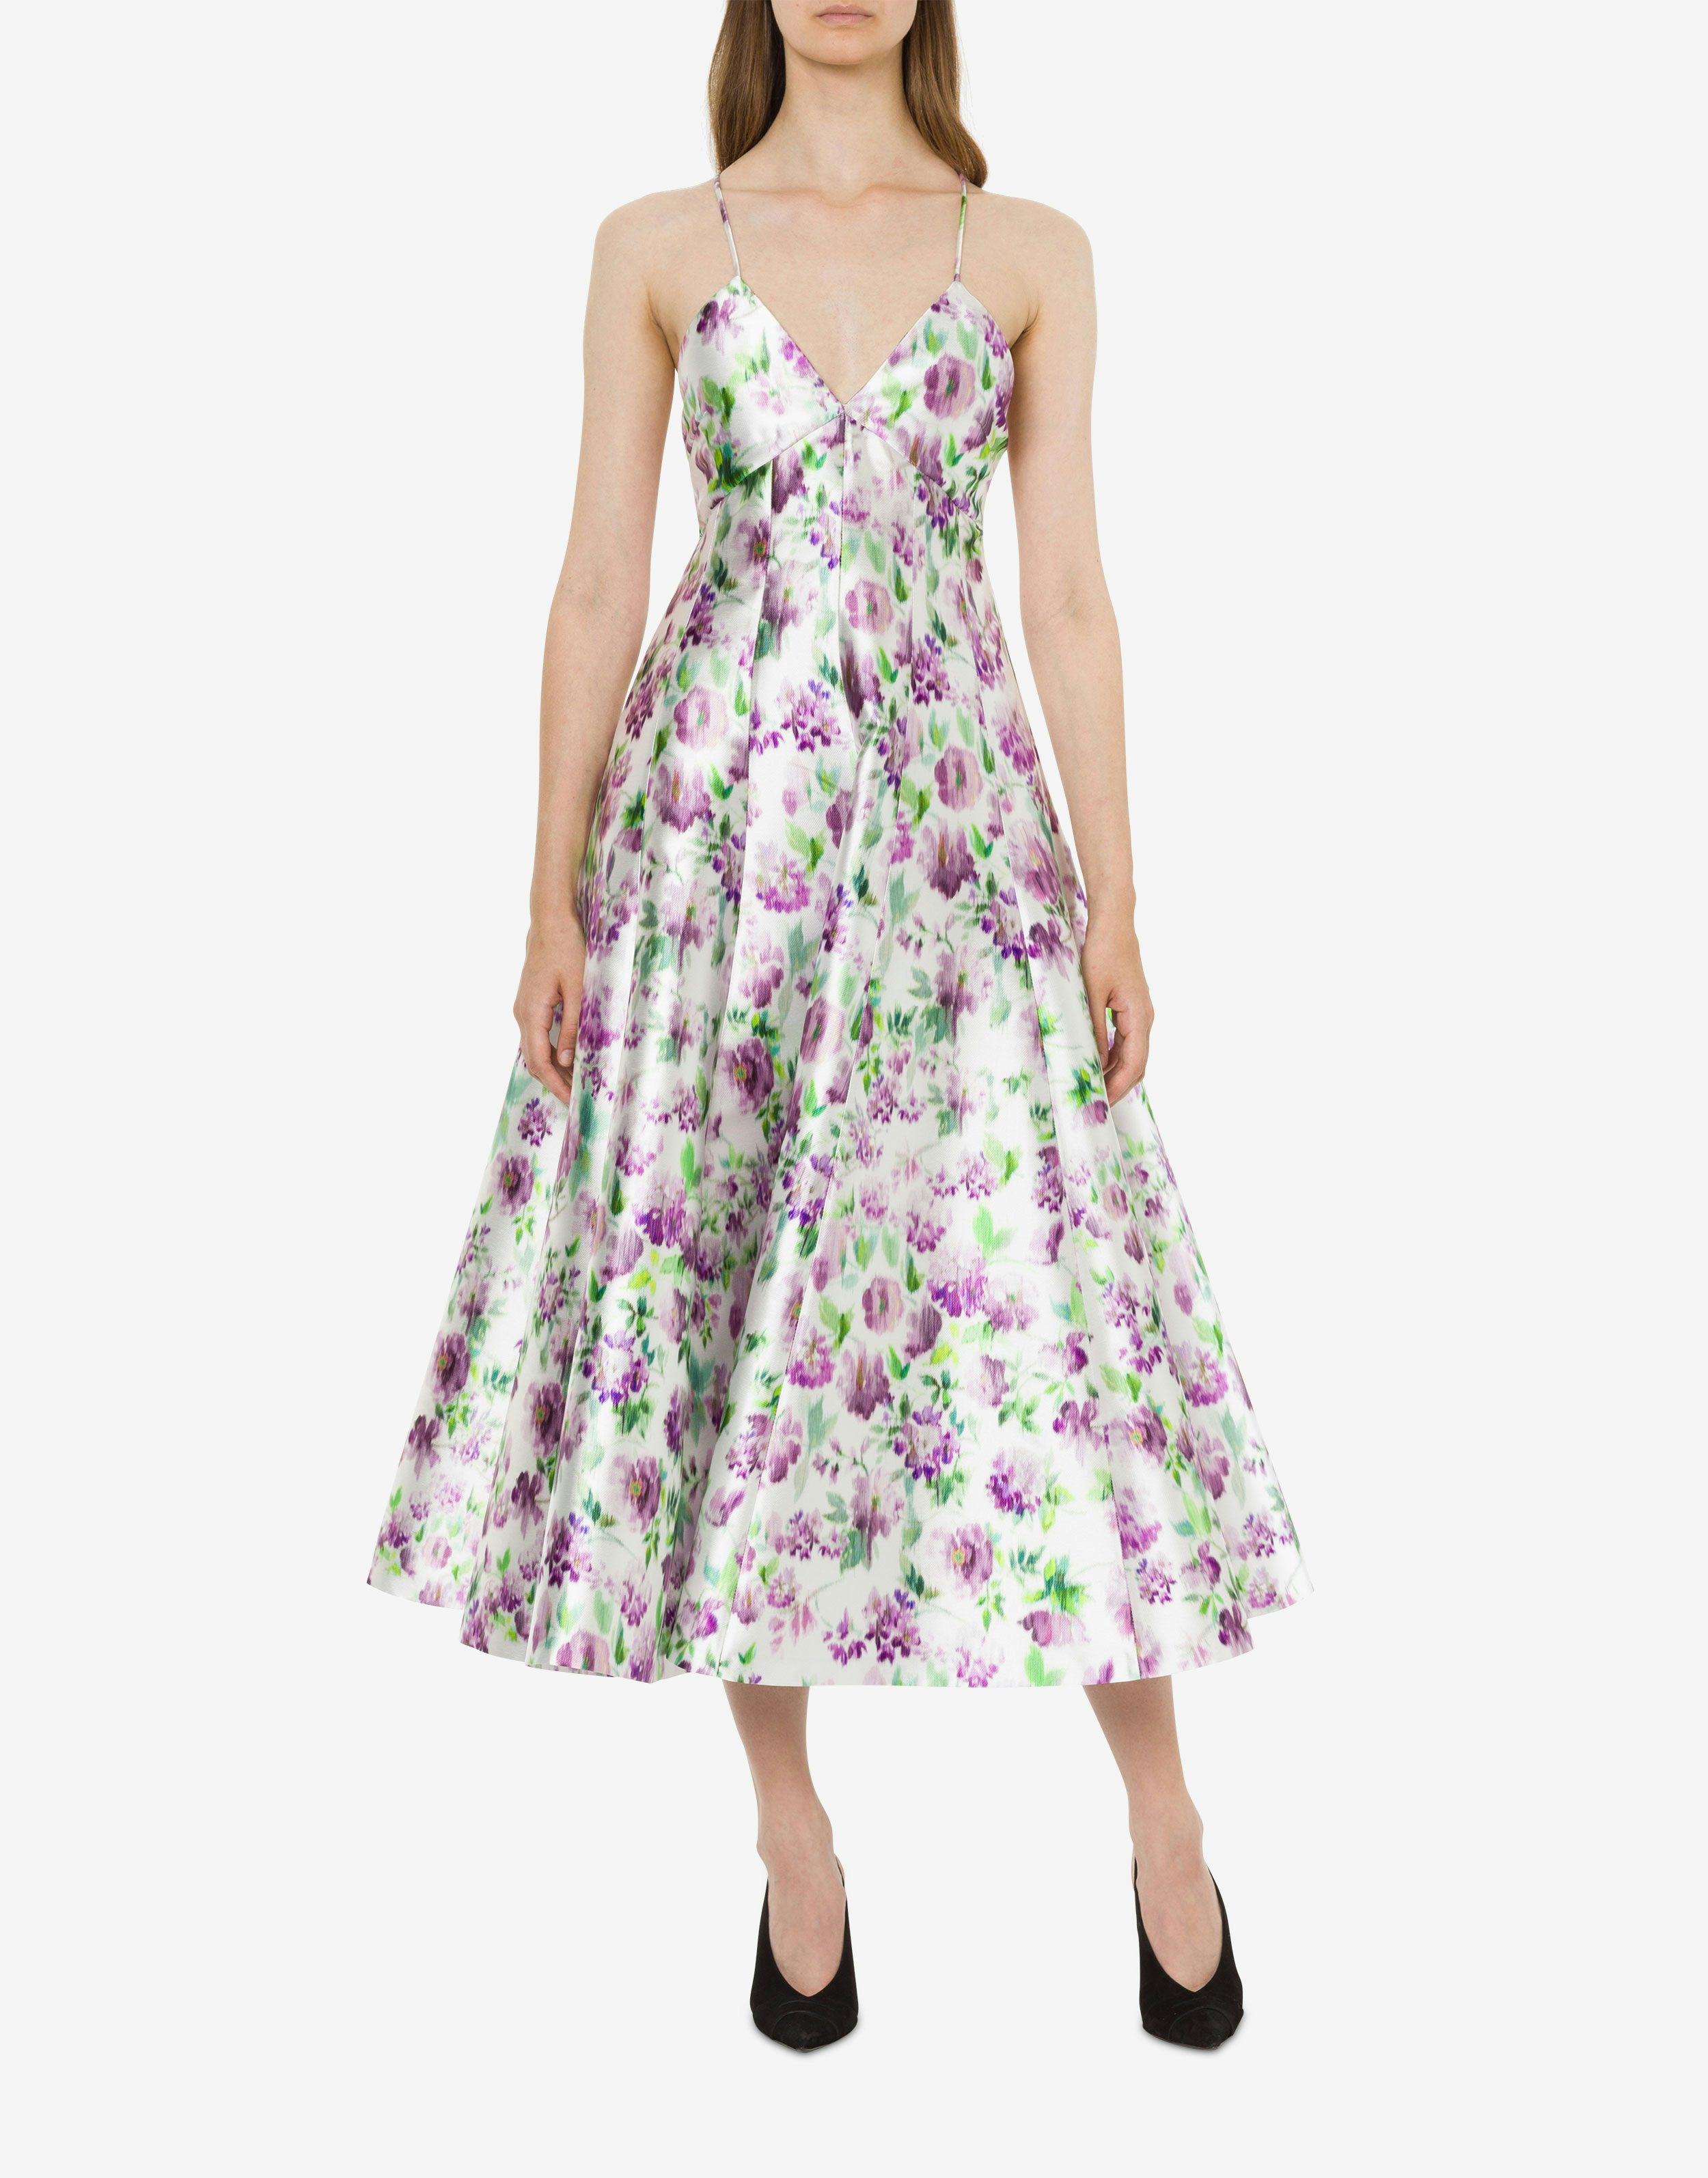 Radzmir dress with flower print